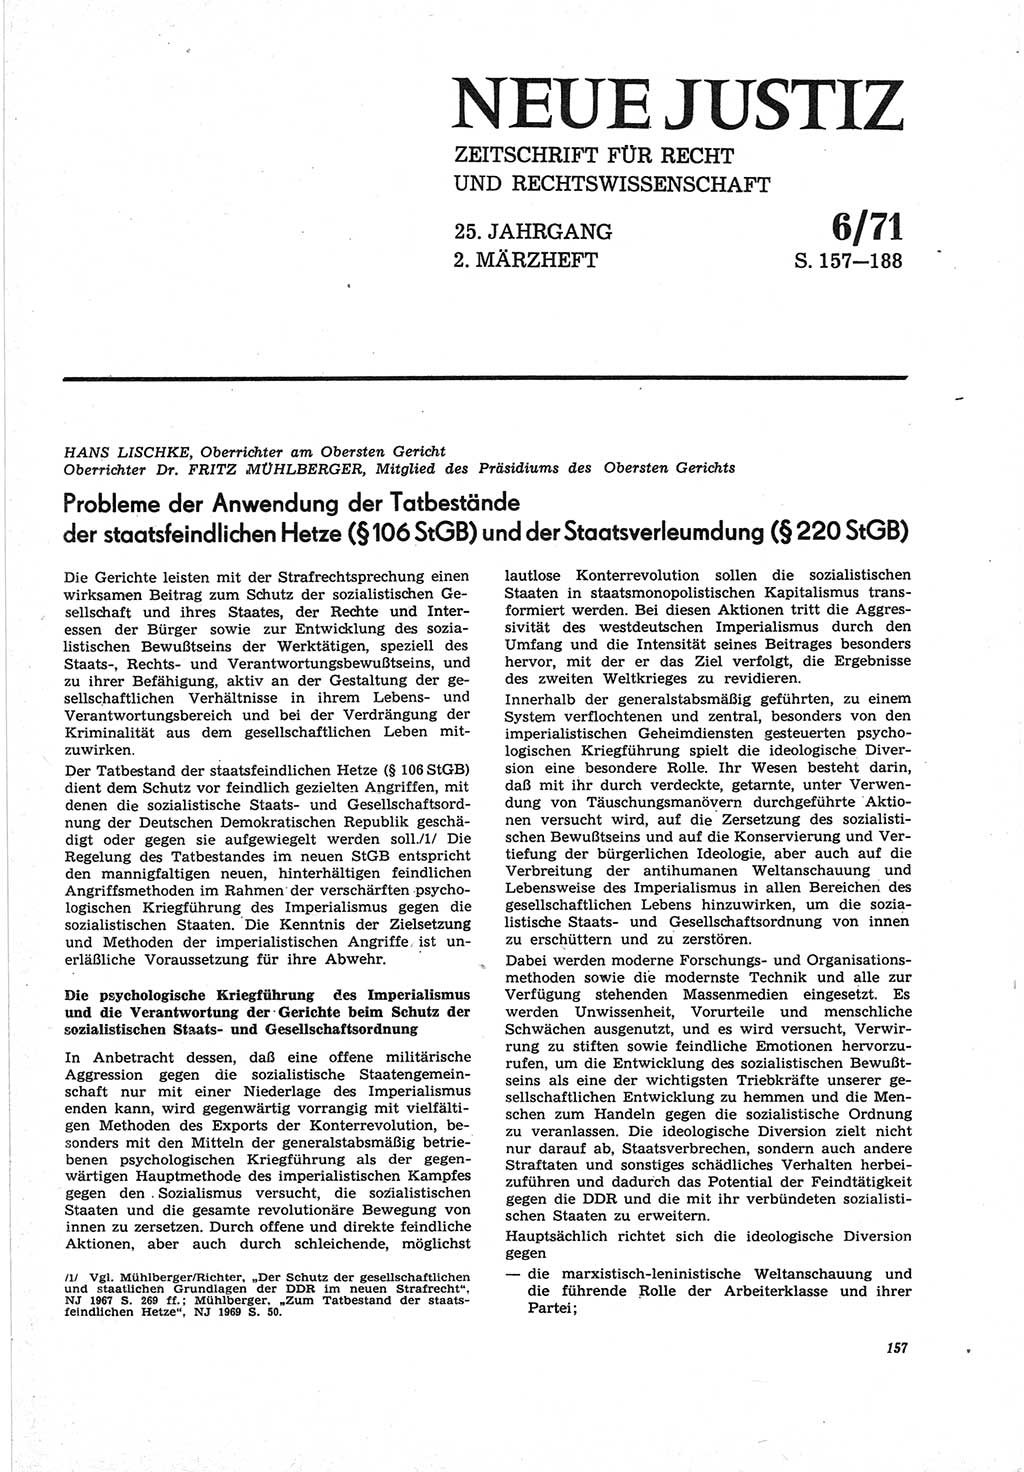 Neue Justiz (NJ), Zeitschrift für Recht und Rechtswissenschaft [Deutsche Demokratische Republik (DDR)], 25. Jahrgang 1971, Seite 157 (NJ DDR 1971, S. 157)